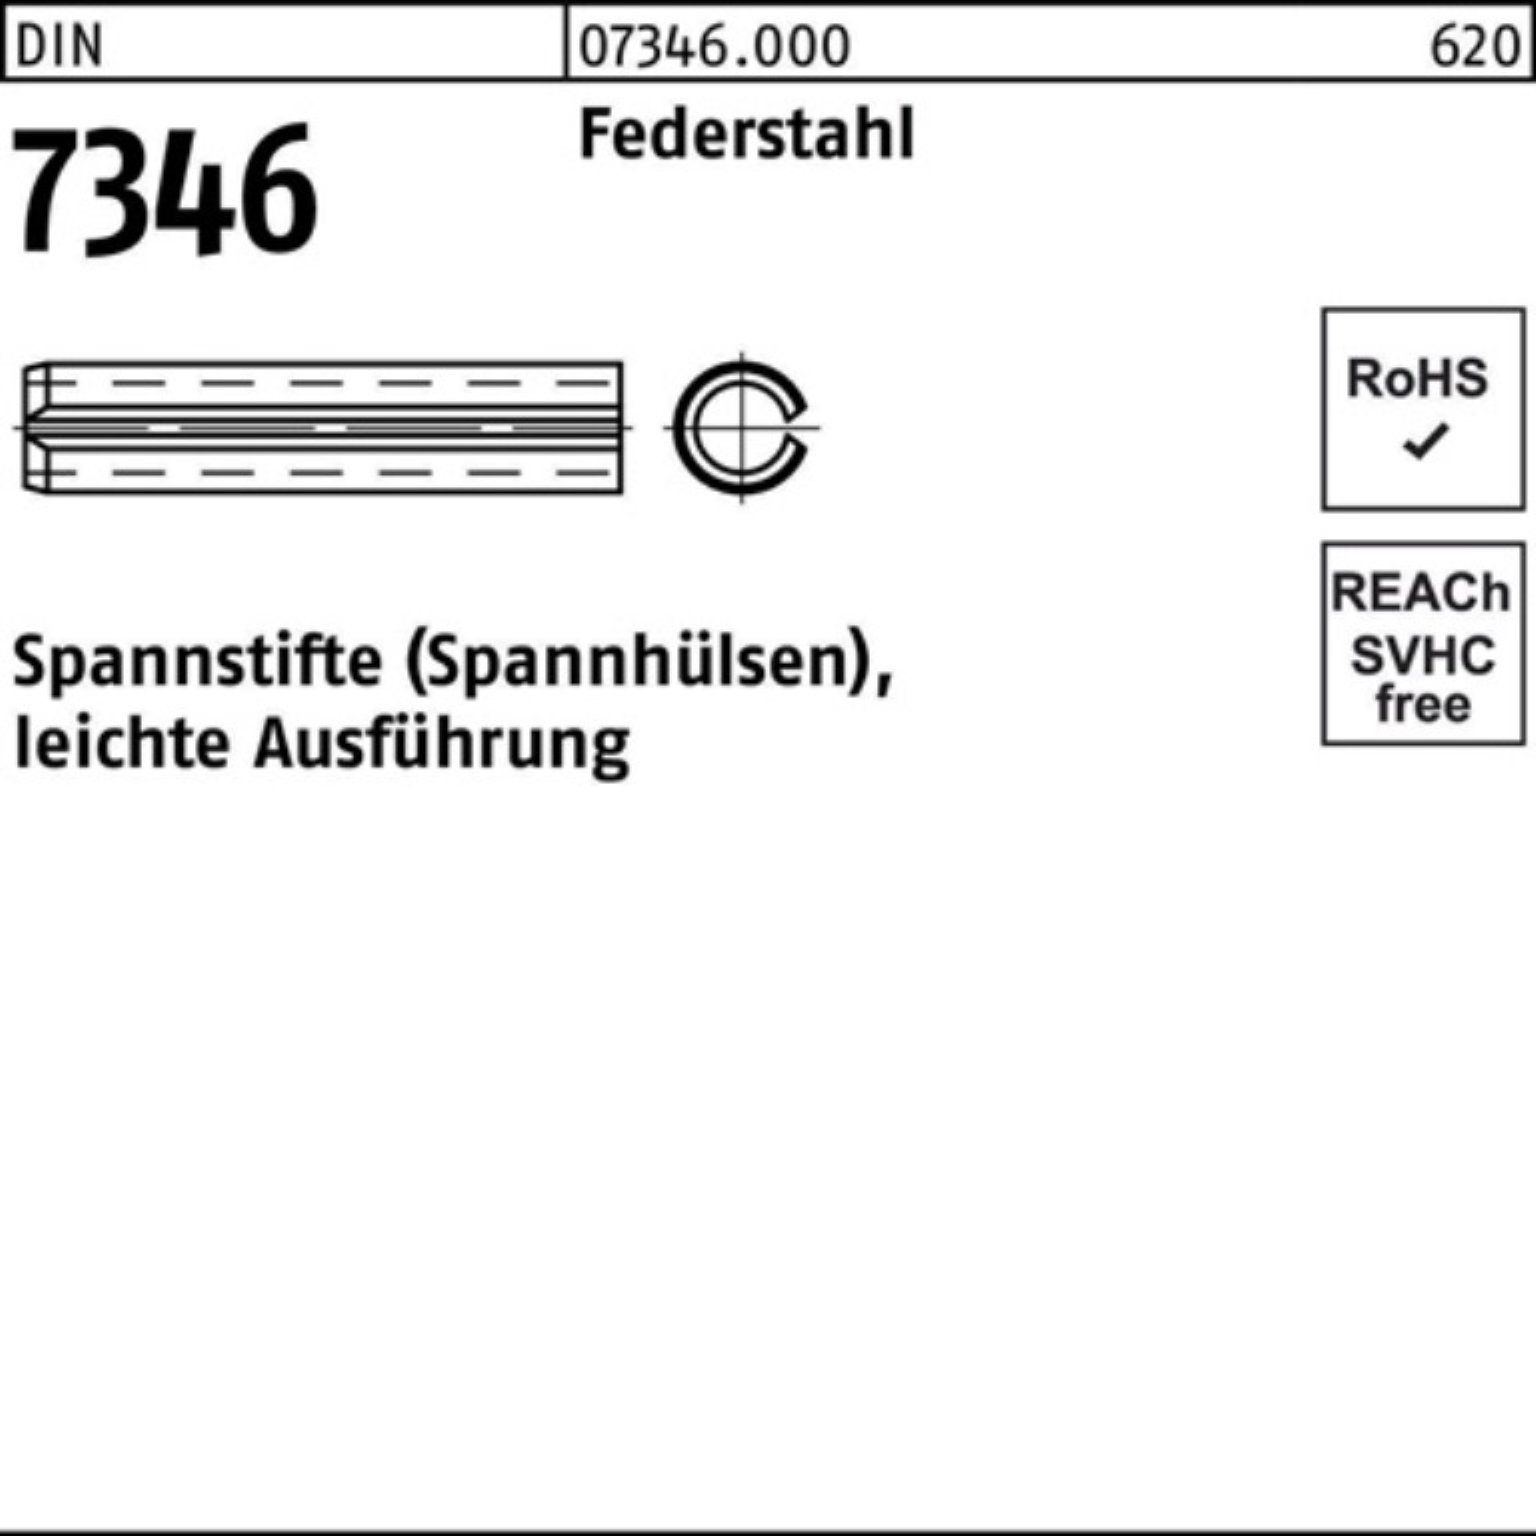 Spannstift Reyher DIN 100er leichte 7346/ISO Pack 45 13337 Federstahl Ausf 6x Spannstift